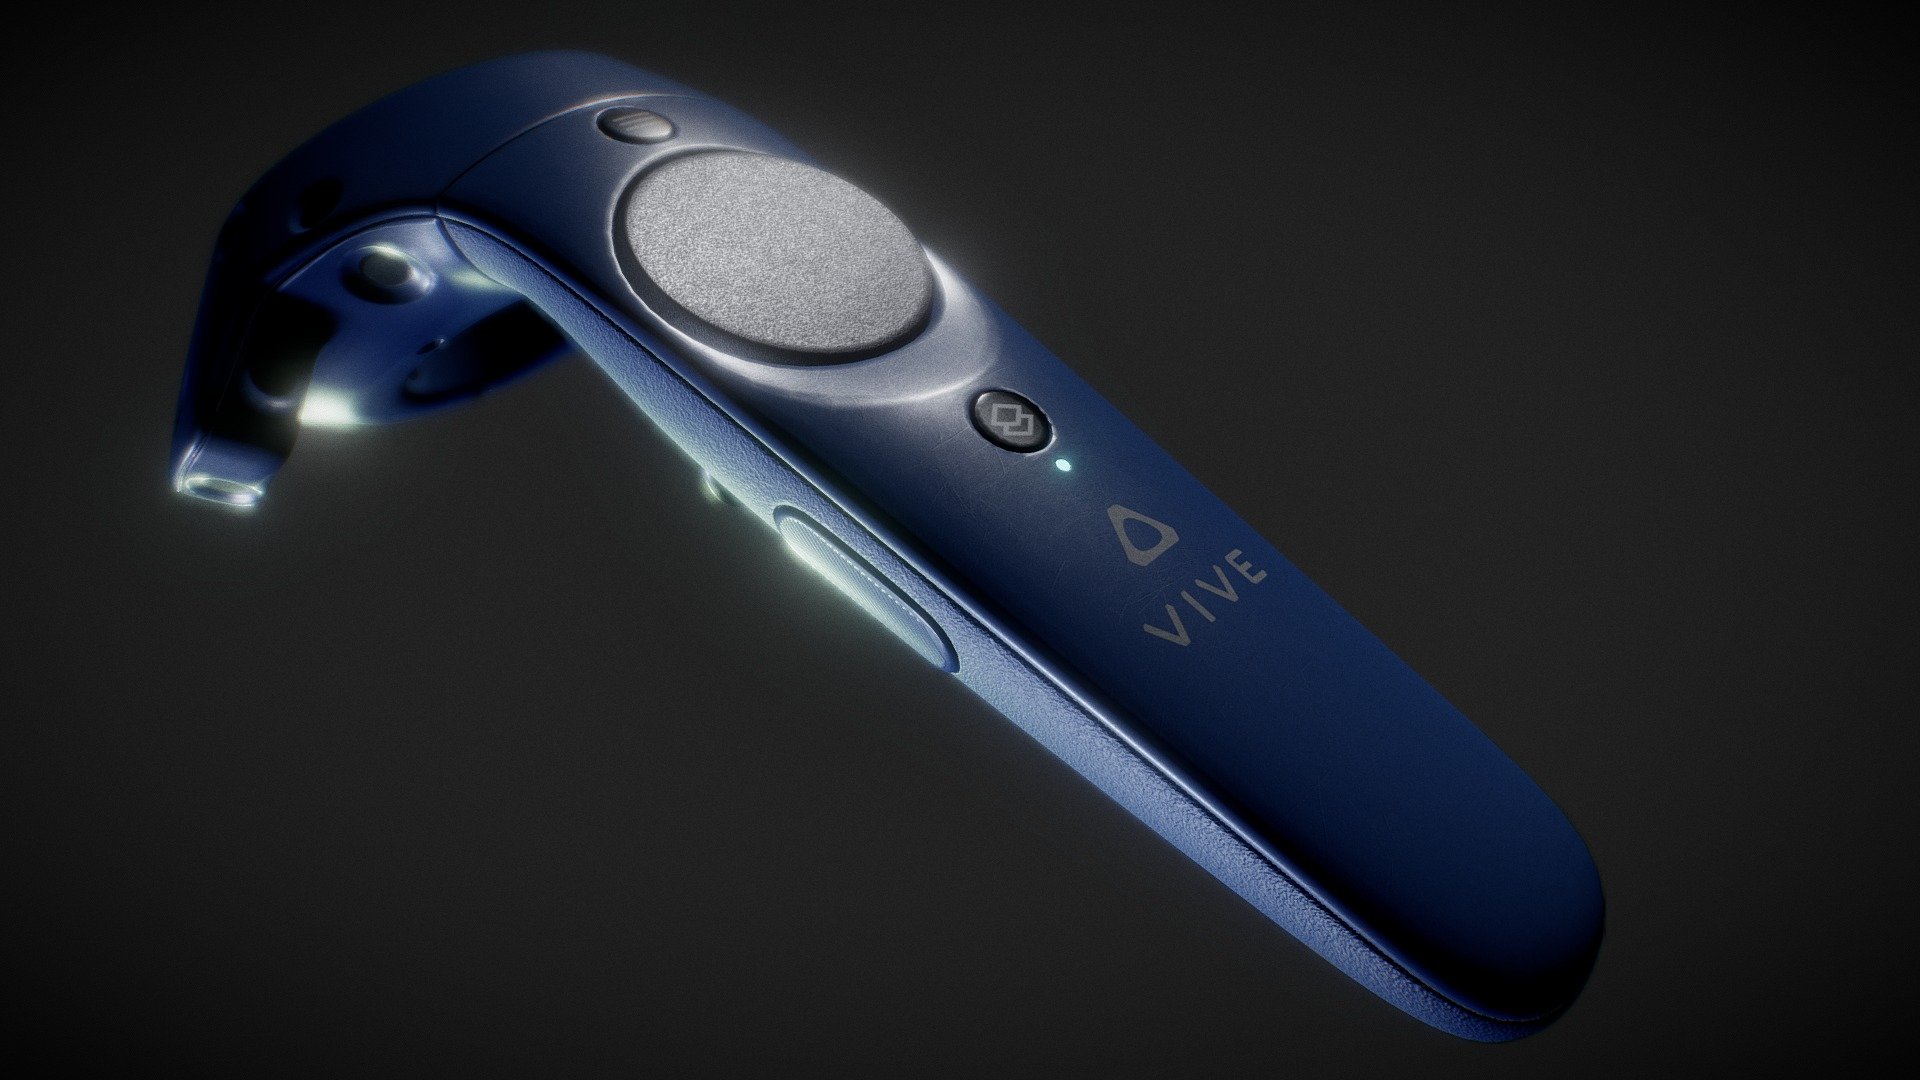 HTC Vive Controller - 3D model by Prx 3D (@prx3d) 3d model